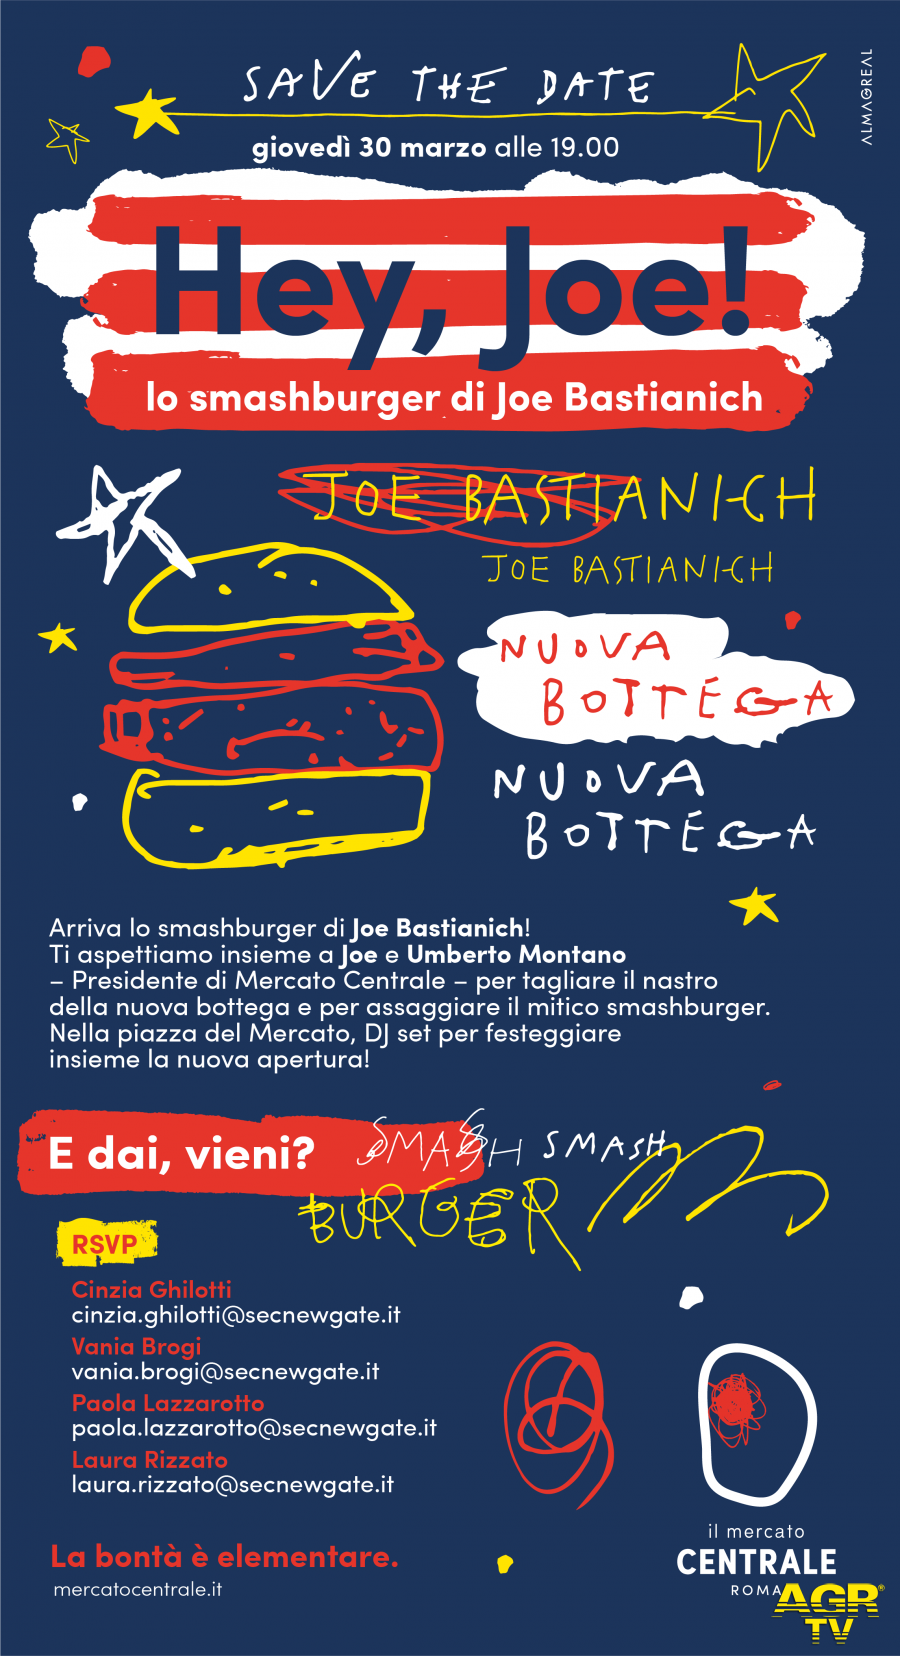 Mercato Centrale Roma arriva il mitico smashburger firmato Joe Bastianich  locandina